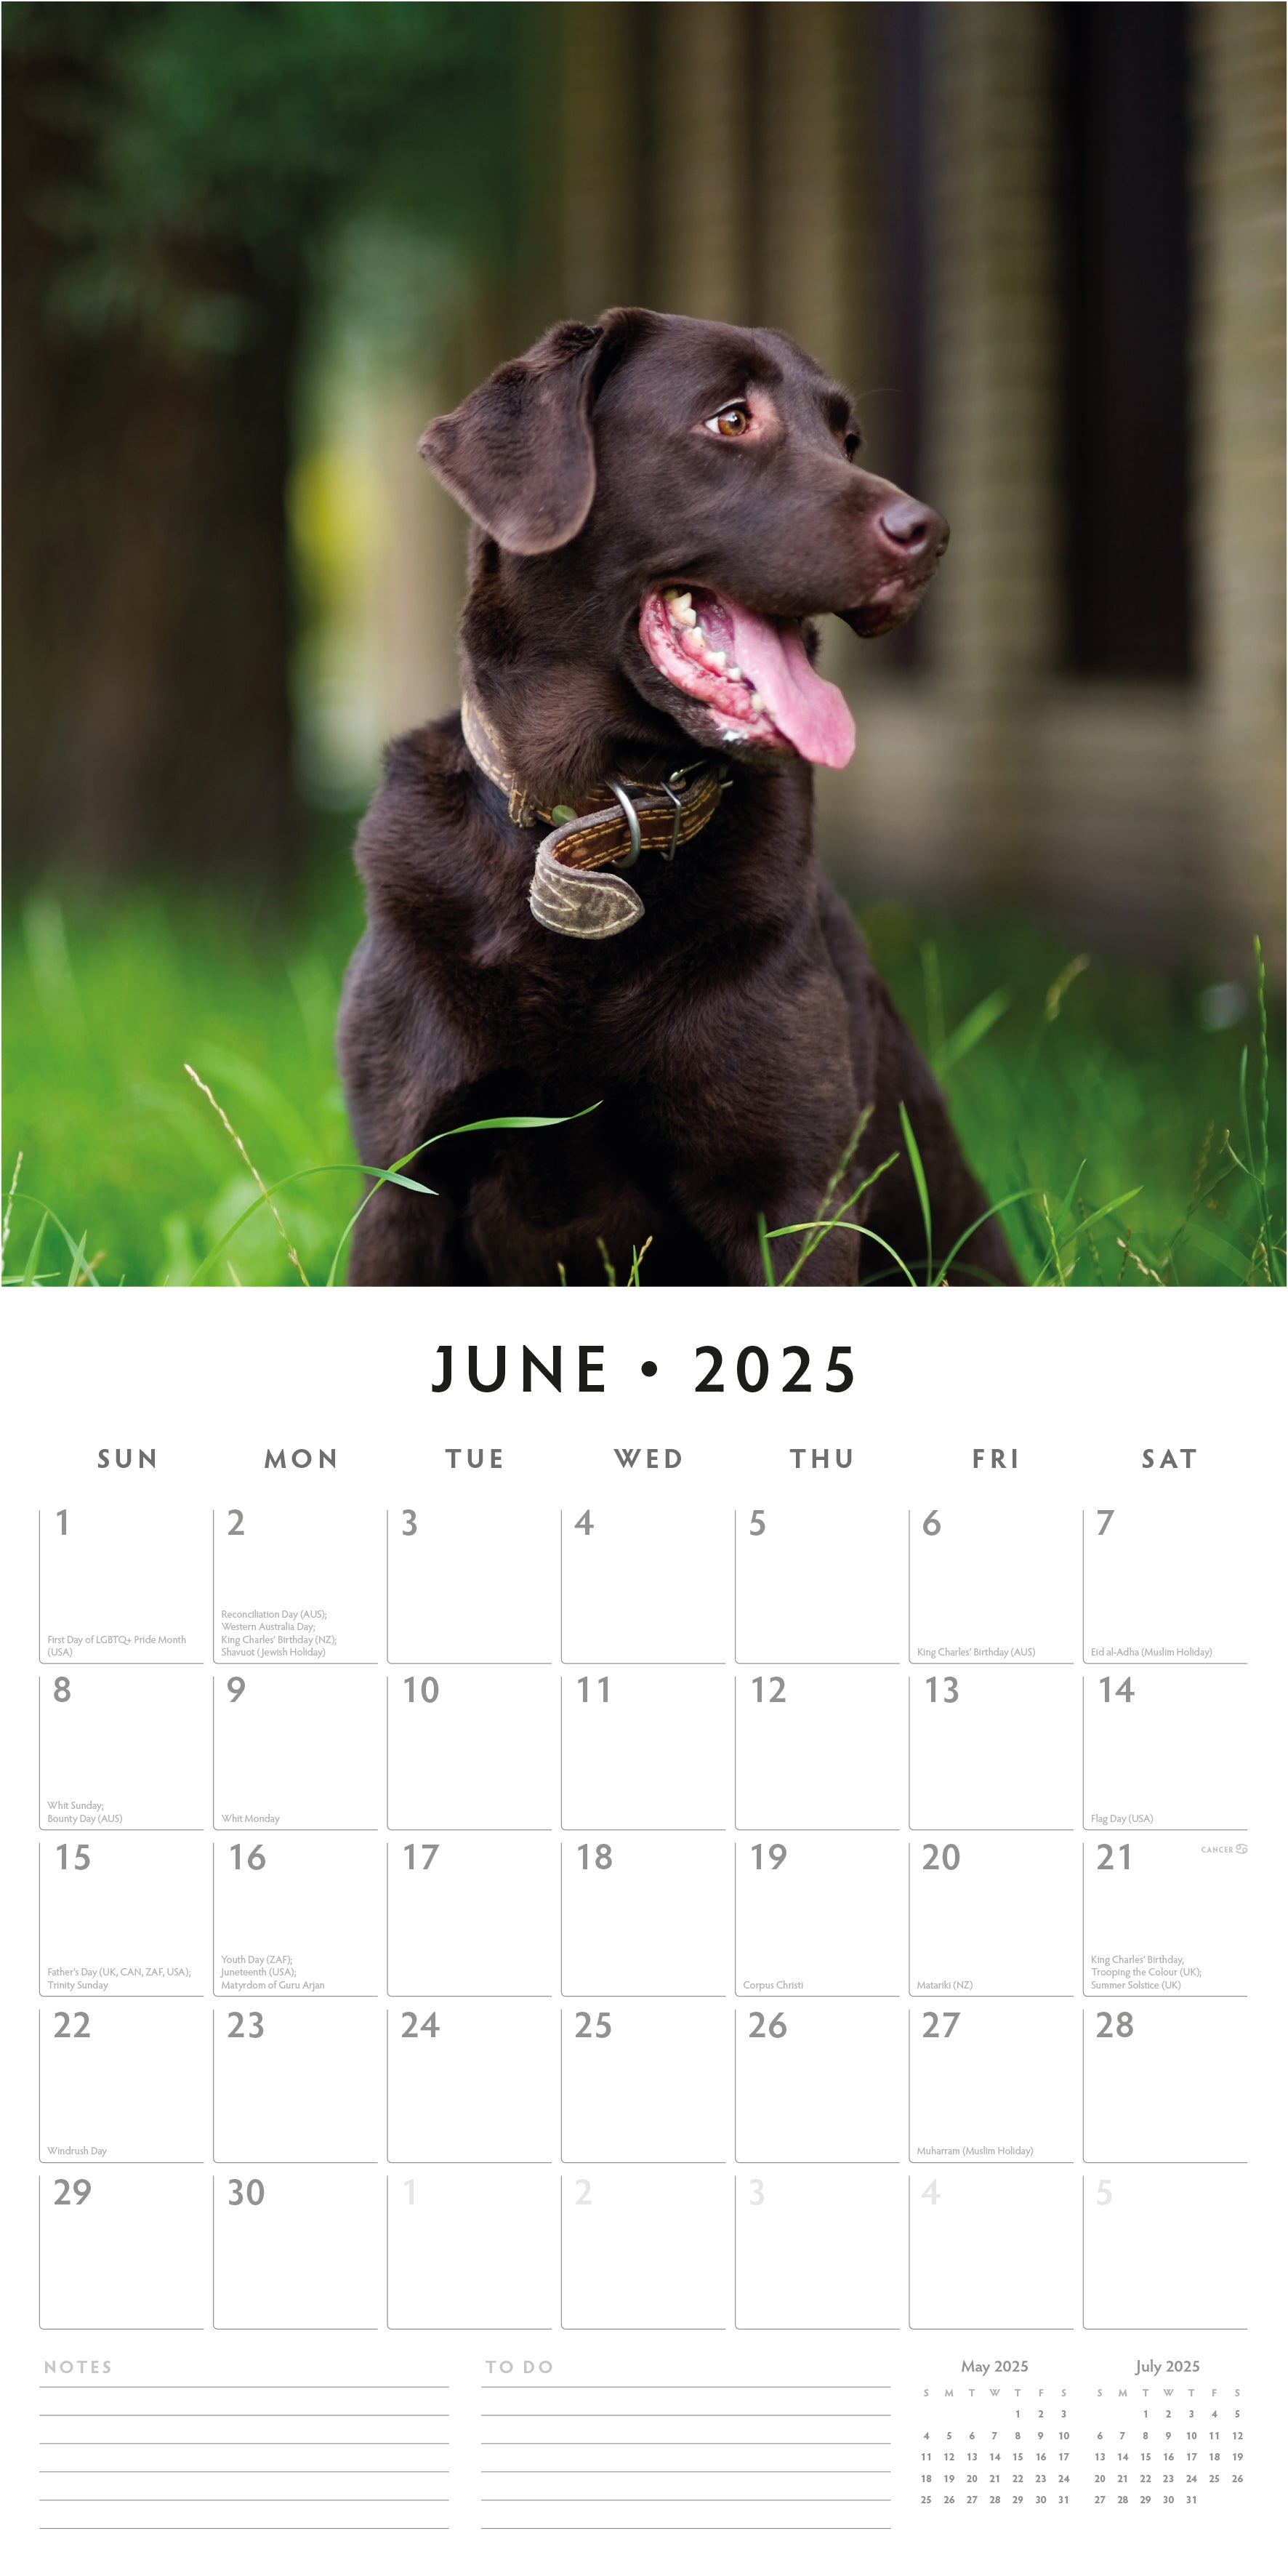 2025 Chocolate Labradors - Square Wall Calendar